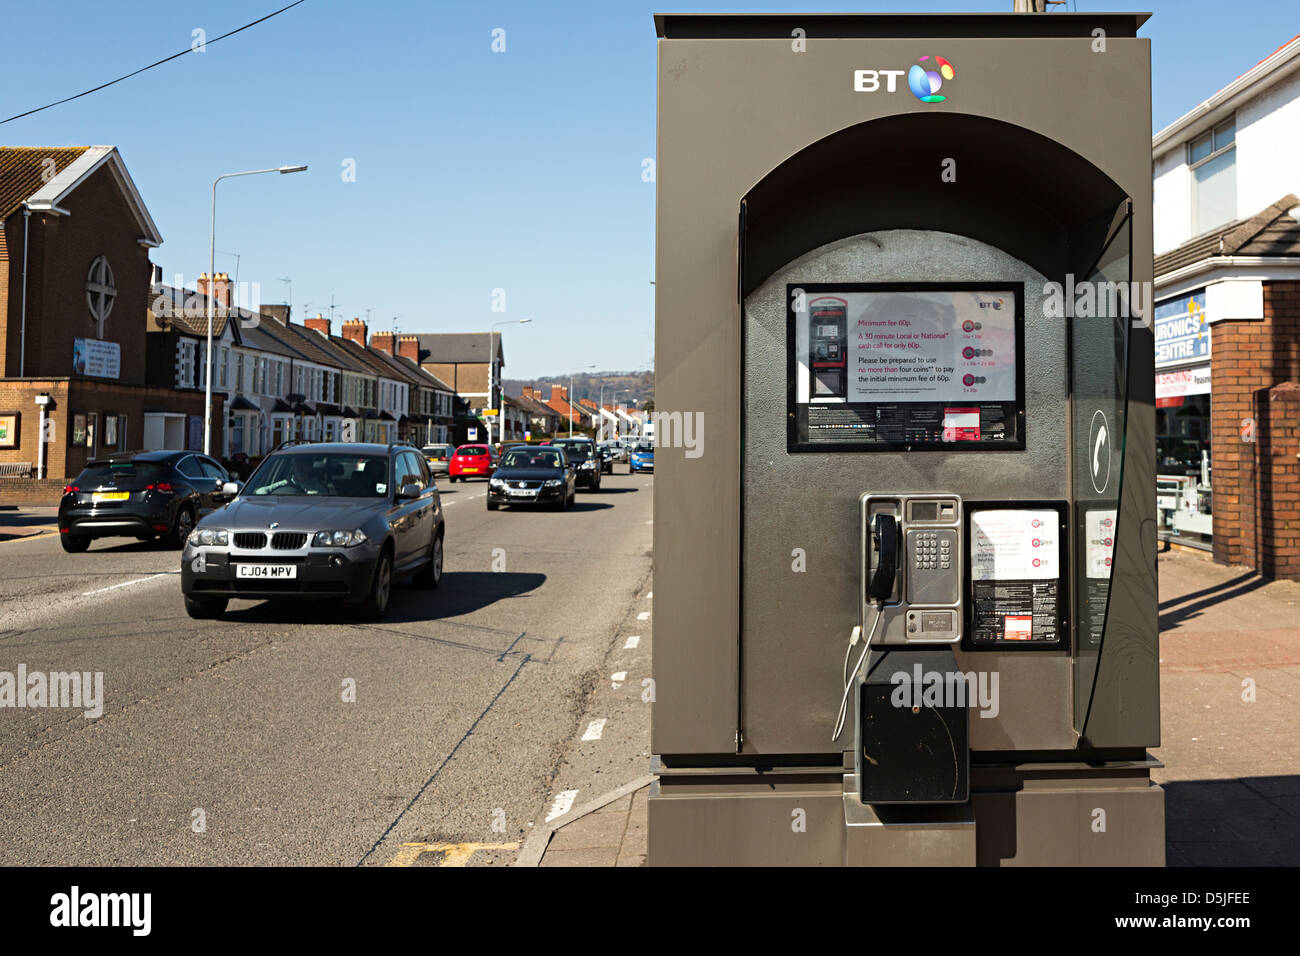 Abrir Teléfono quiosco junto a la concurrida calle ruidosa, Cardiff, Gales, Reino Unido Foto de stock